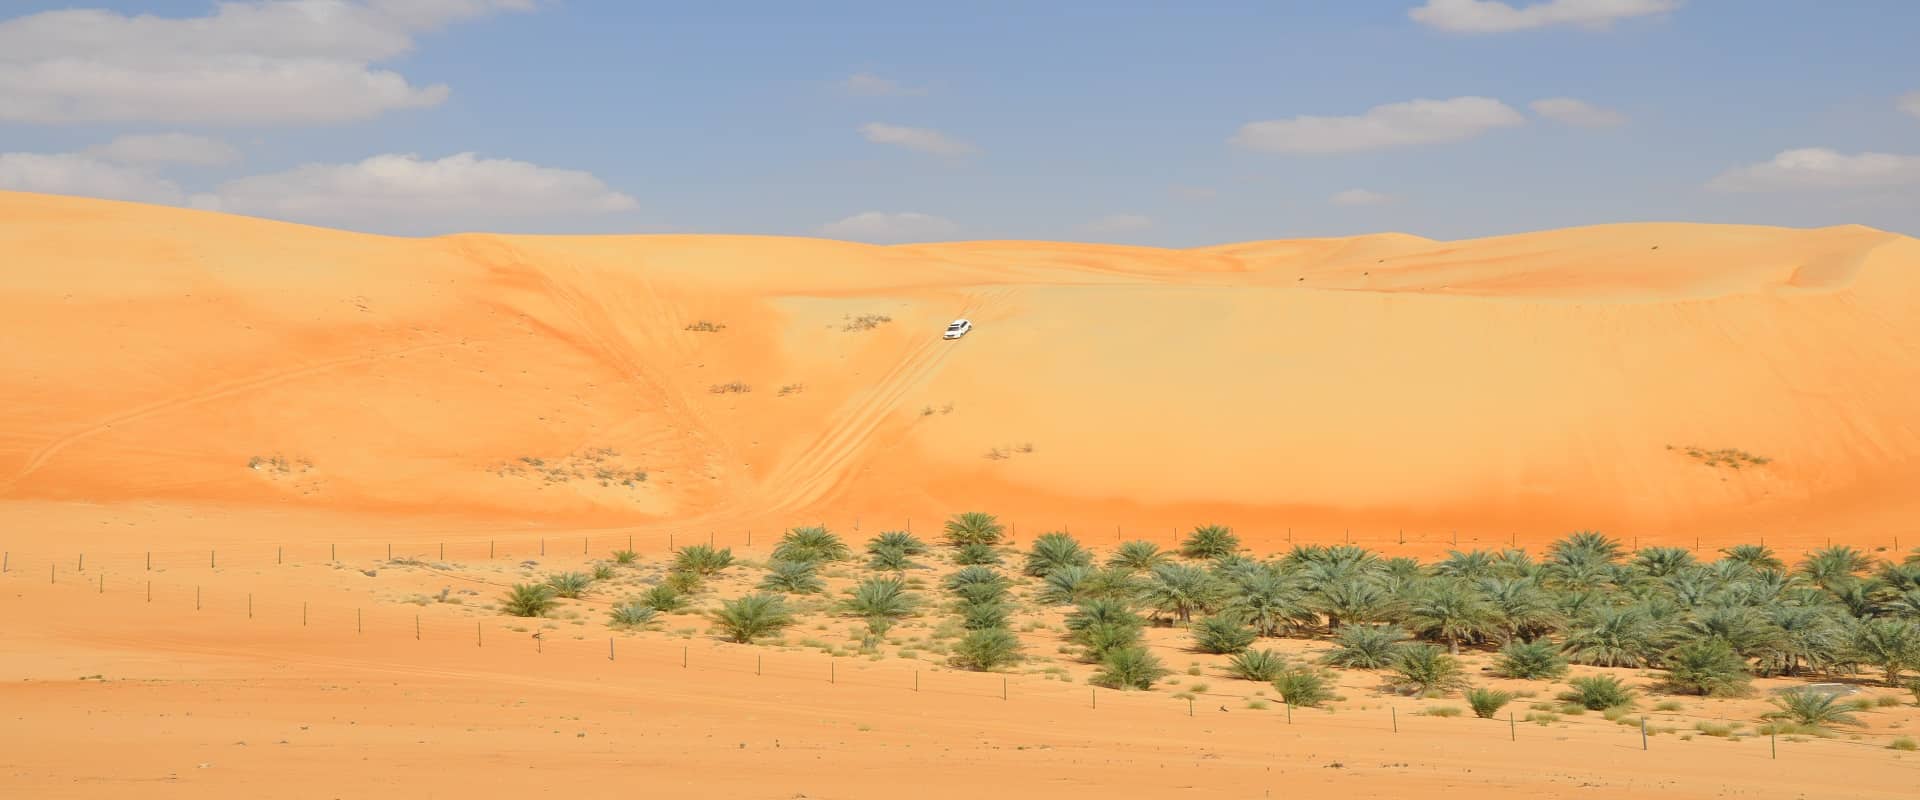 د ابو ظبی څخه لیوا صحرای سفاری